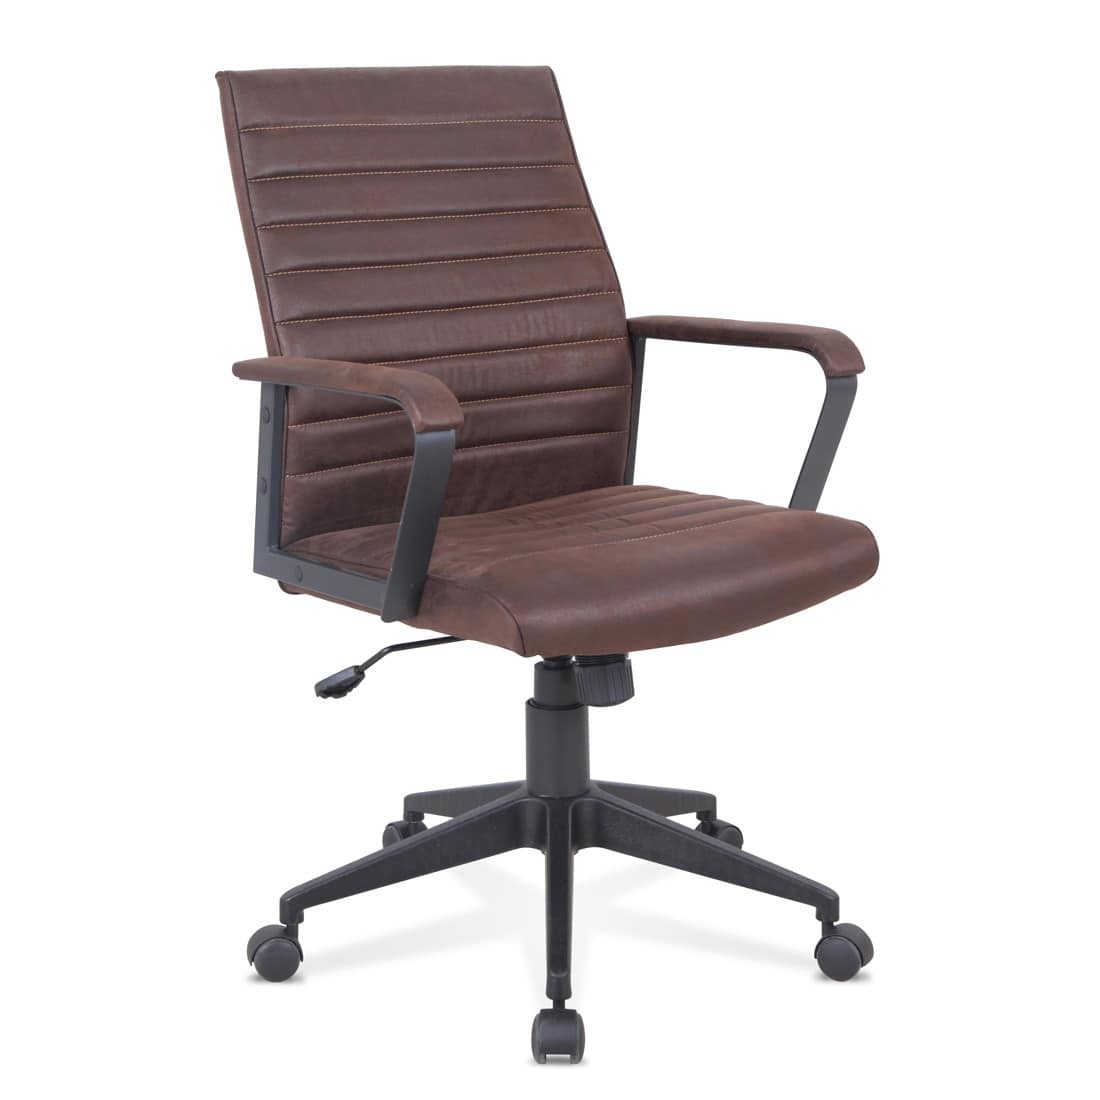 Sedia ergonomica in eco-pelle, robusta, per ufficio